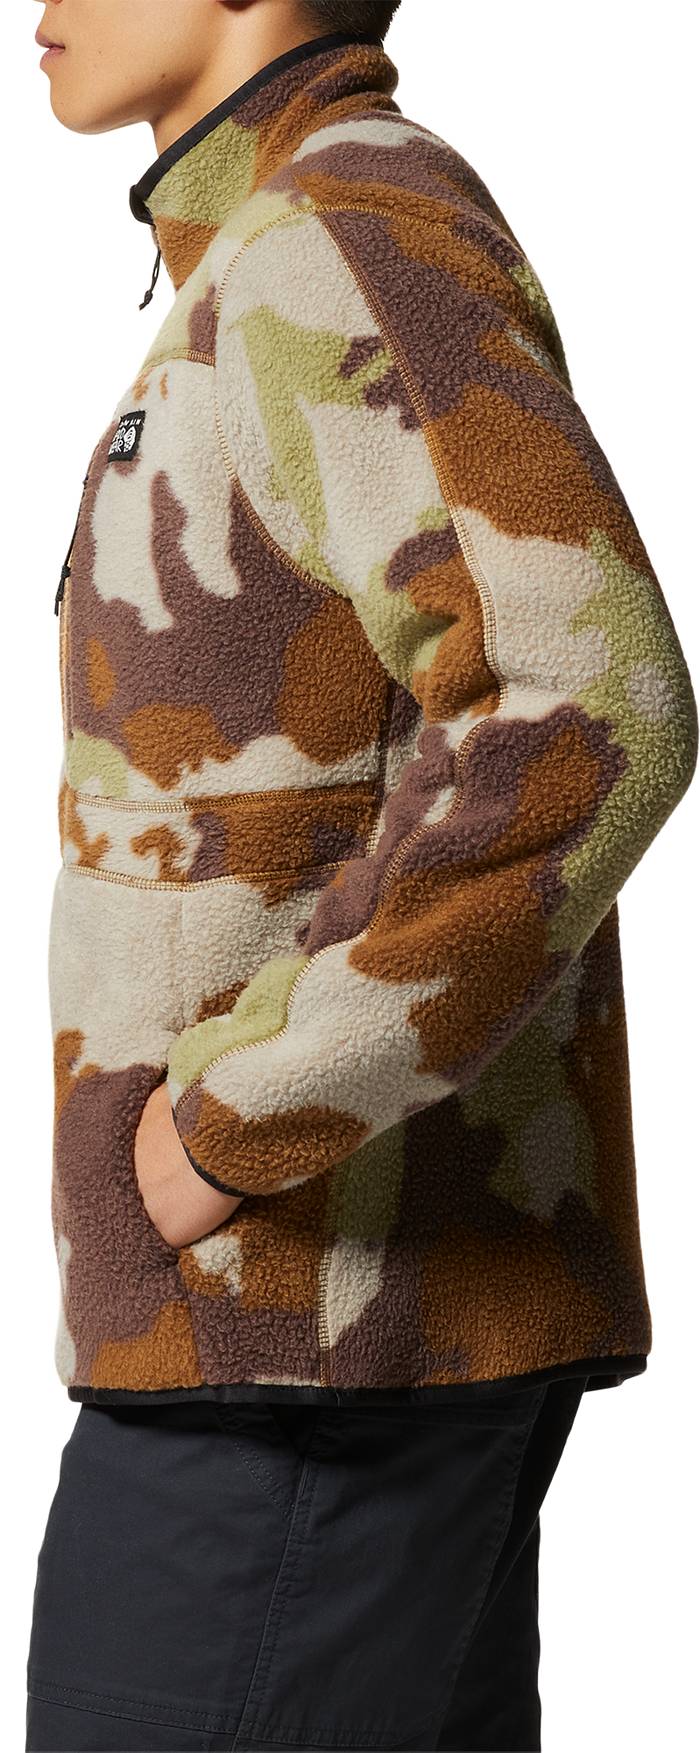 Mountain Hardwear Men's HiCamp Fleece Pullover